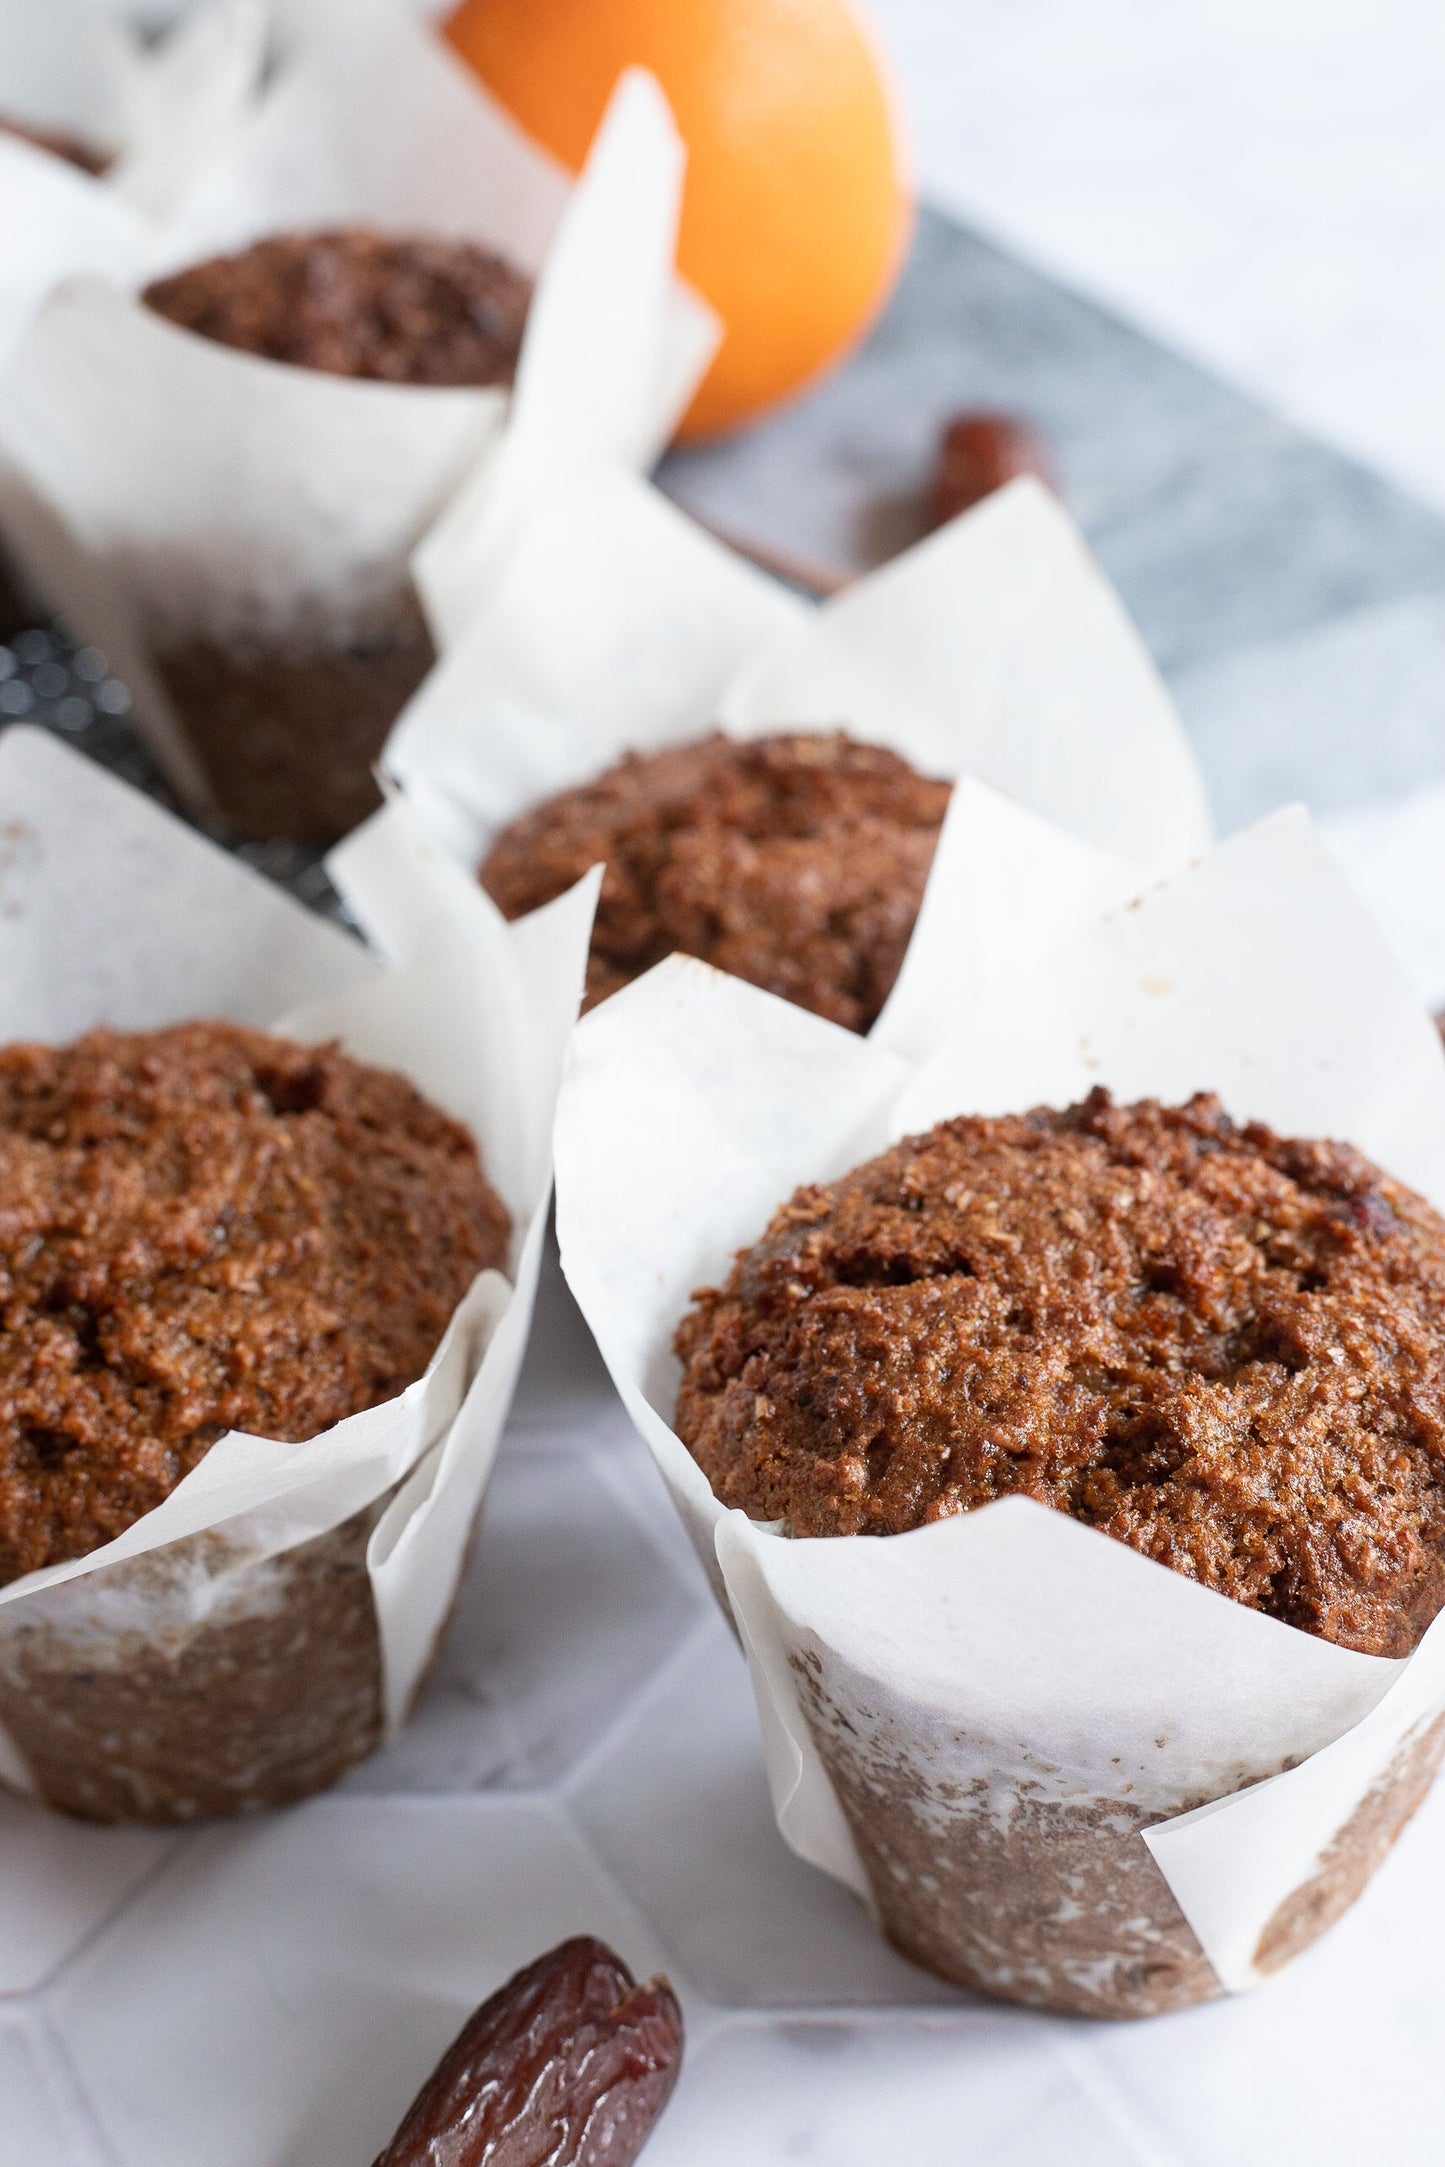 Naturally sweetened bran muffins